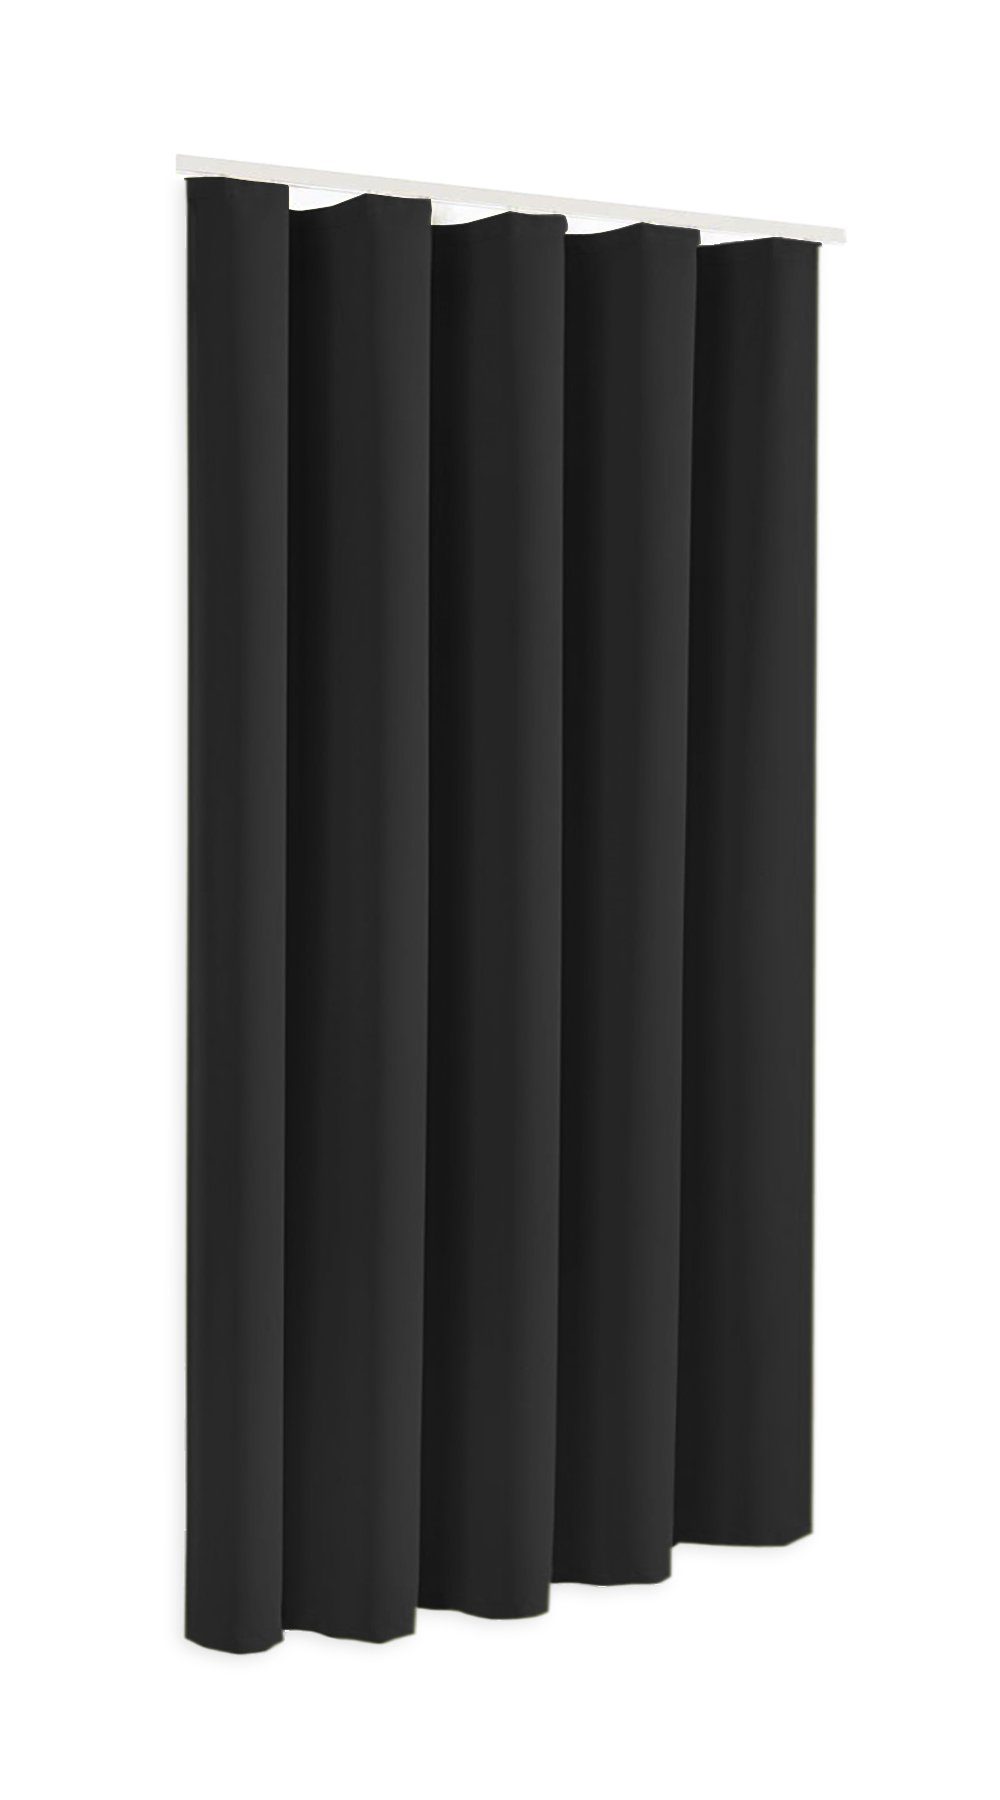 Verdunkelungsvorhang Blackout Verdunkelungsschal oder Höhe 245cm, Sopran, schwarz, 175cm blickdicht, in Thermovorhang, Farbe Clever-Kauf-24 Modell